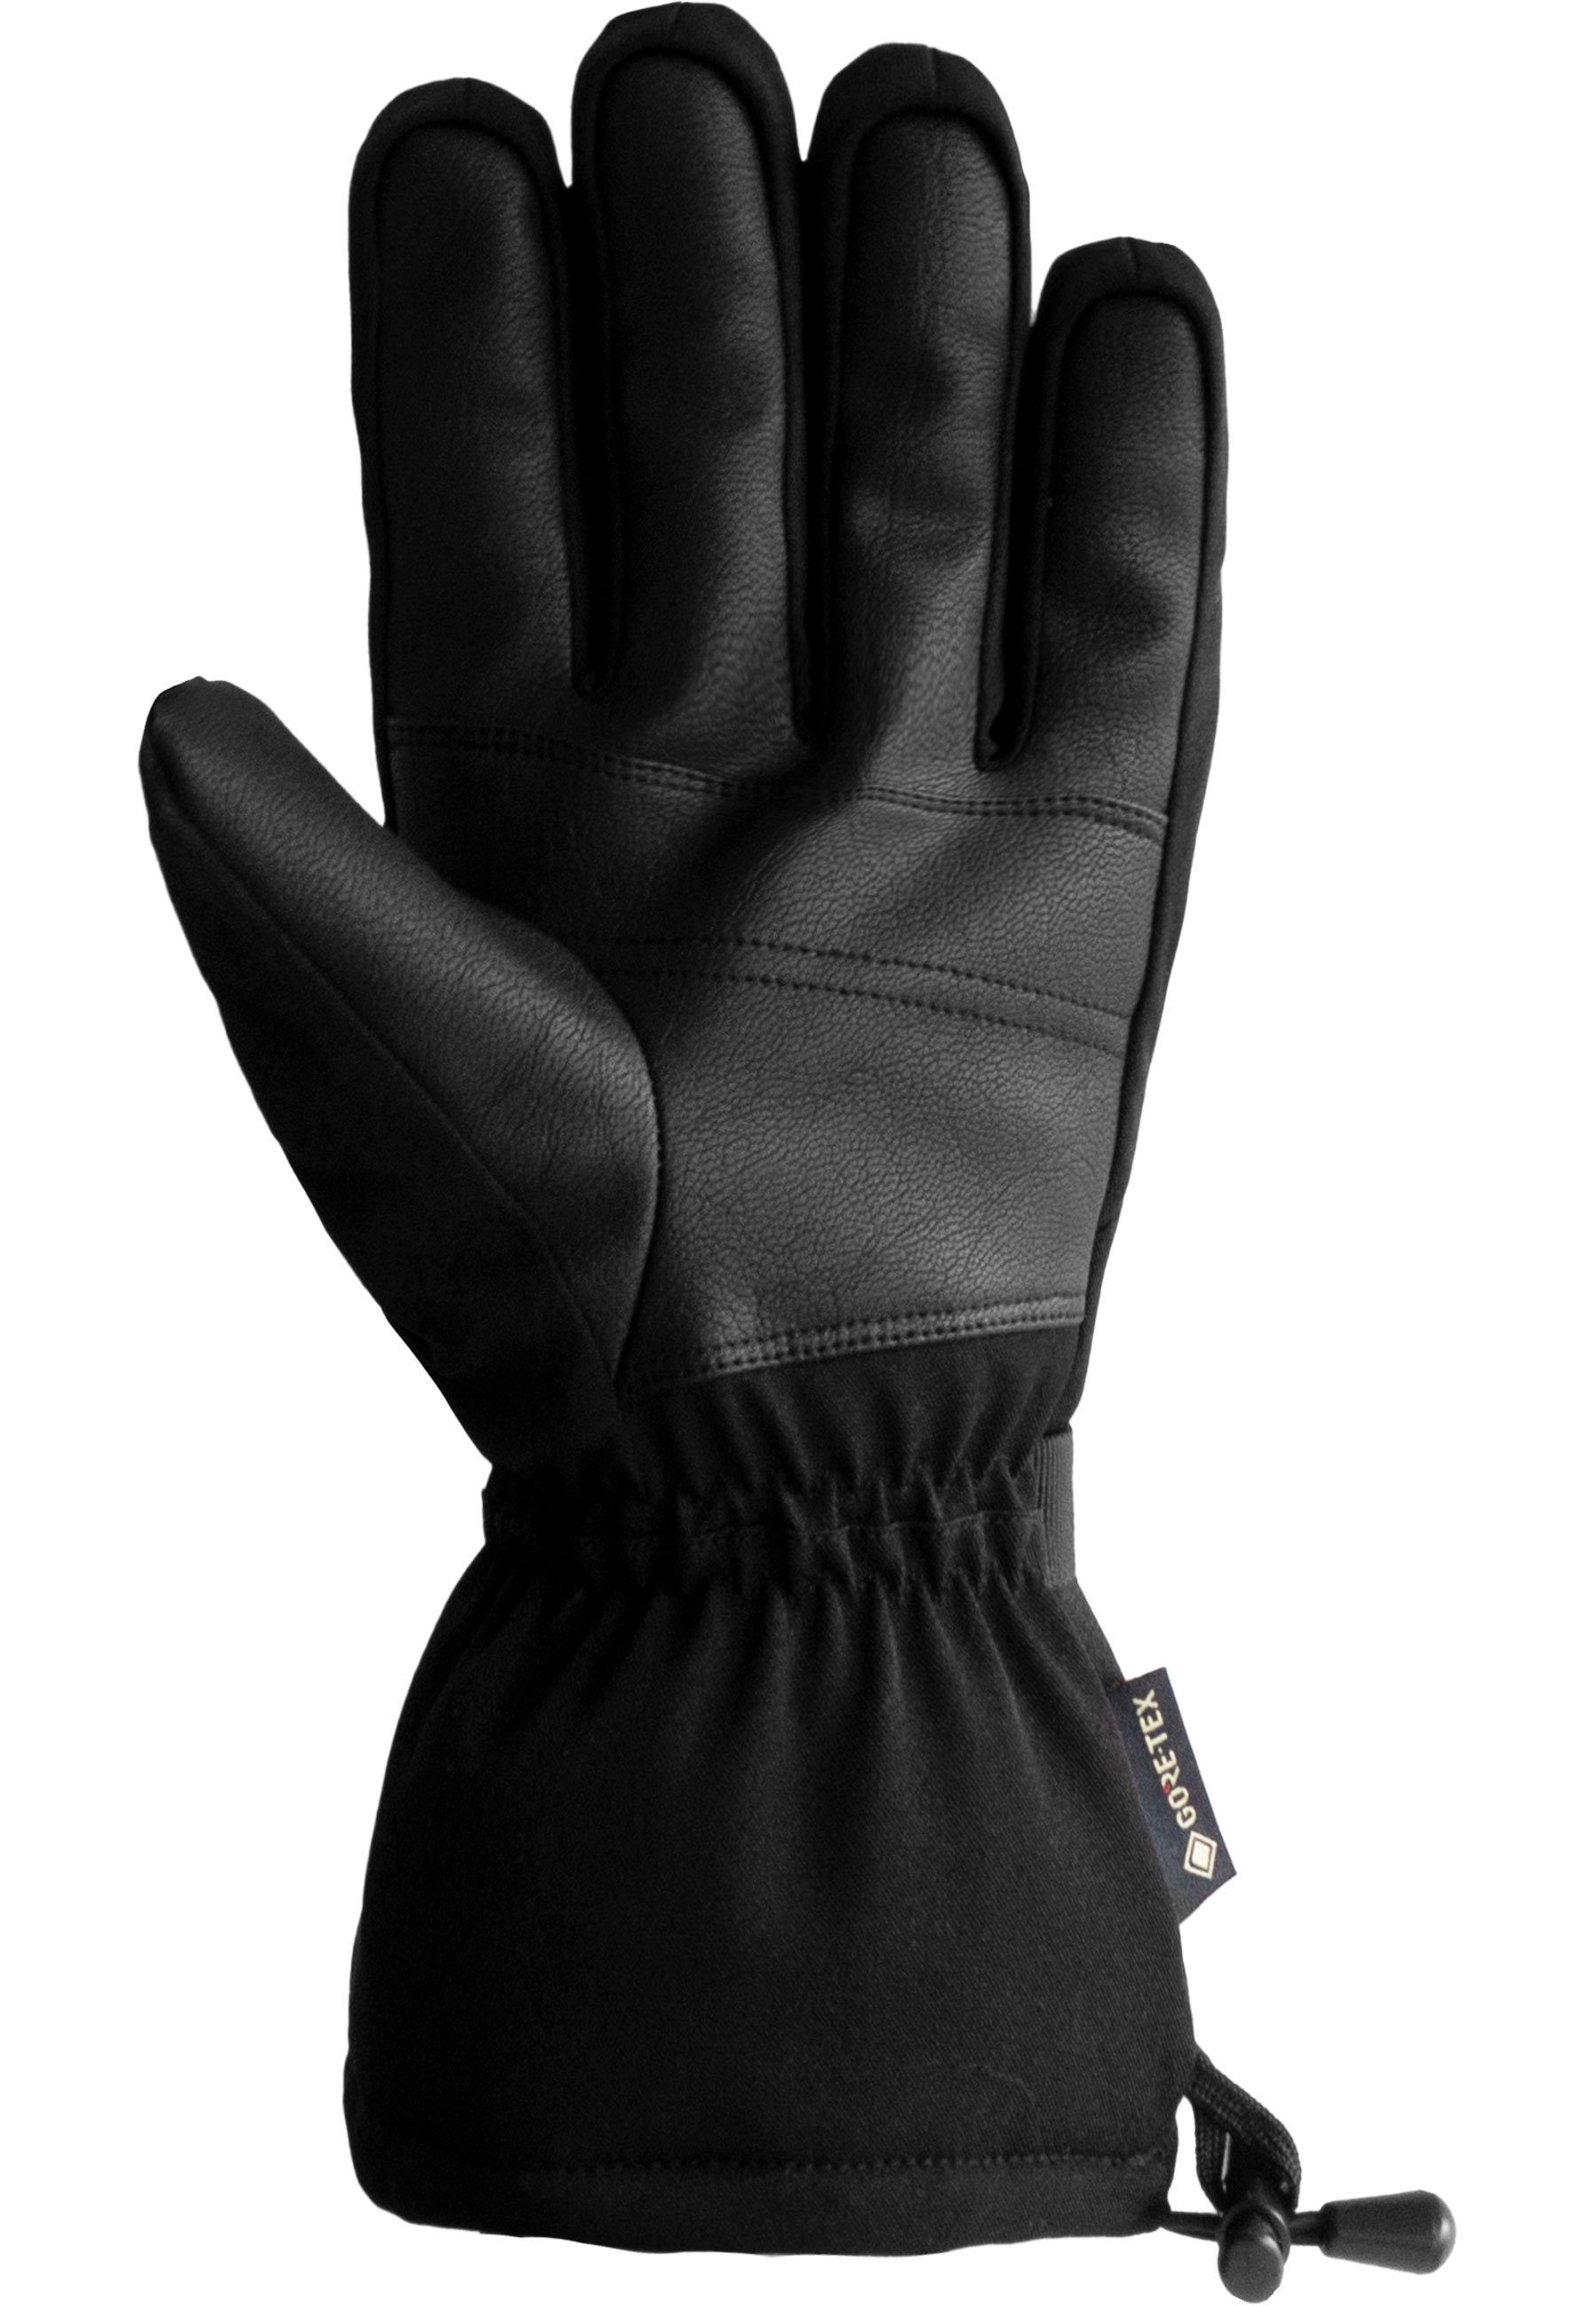 Reusch Skihandschuhe Winter Material und atmungsaktivem wasserdichtem GORE-TEX Glove Warm aus